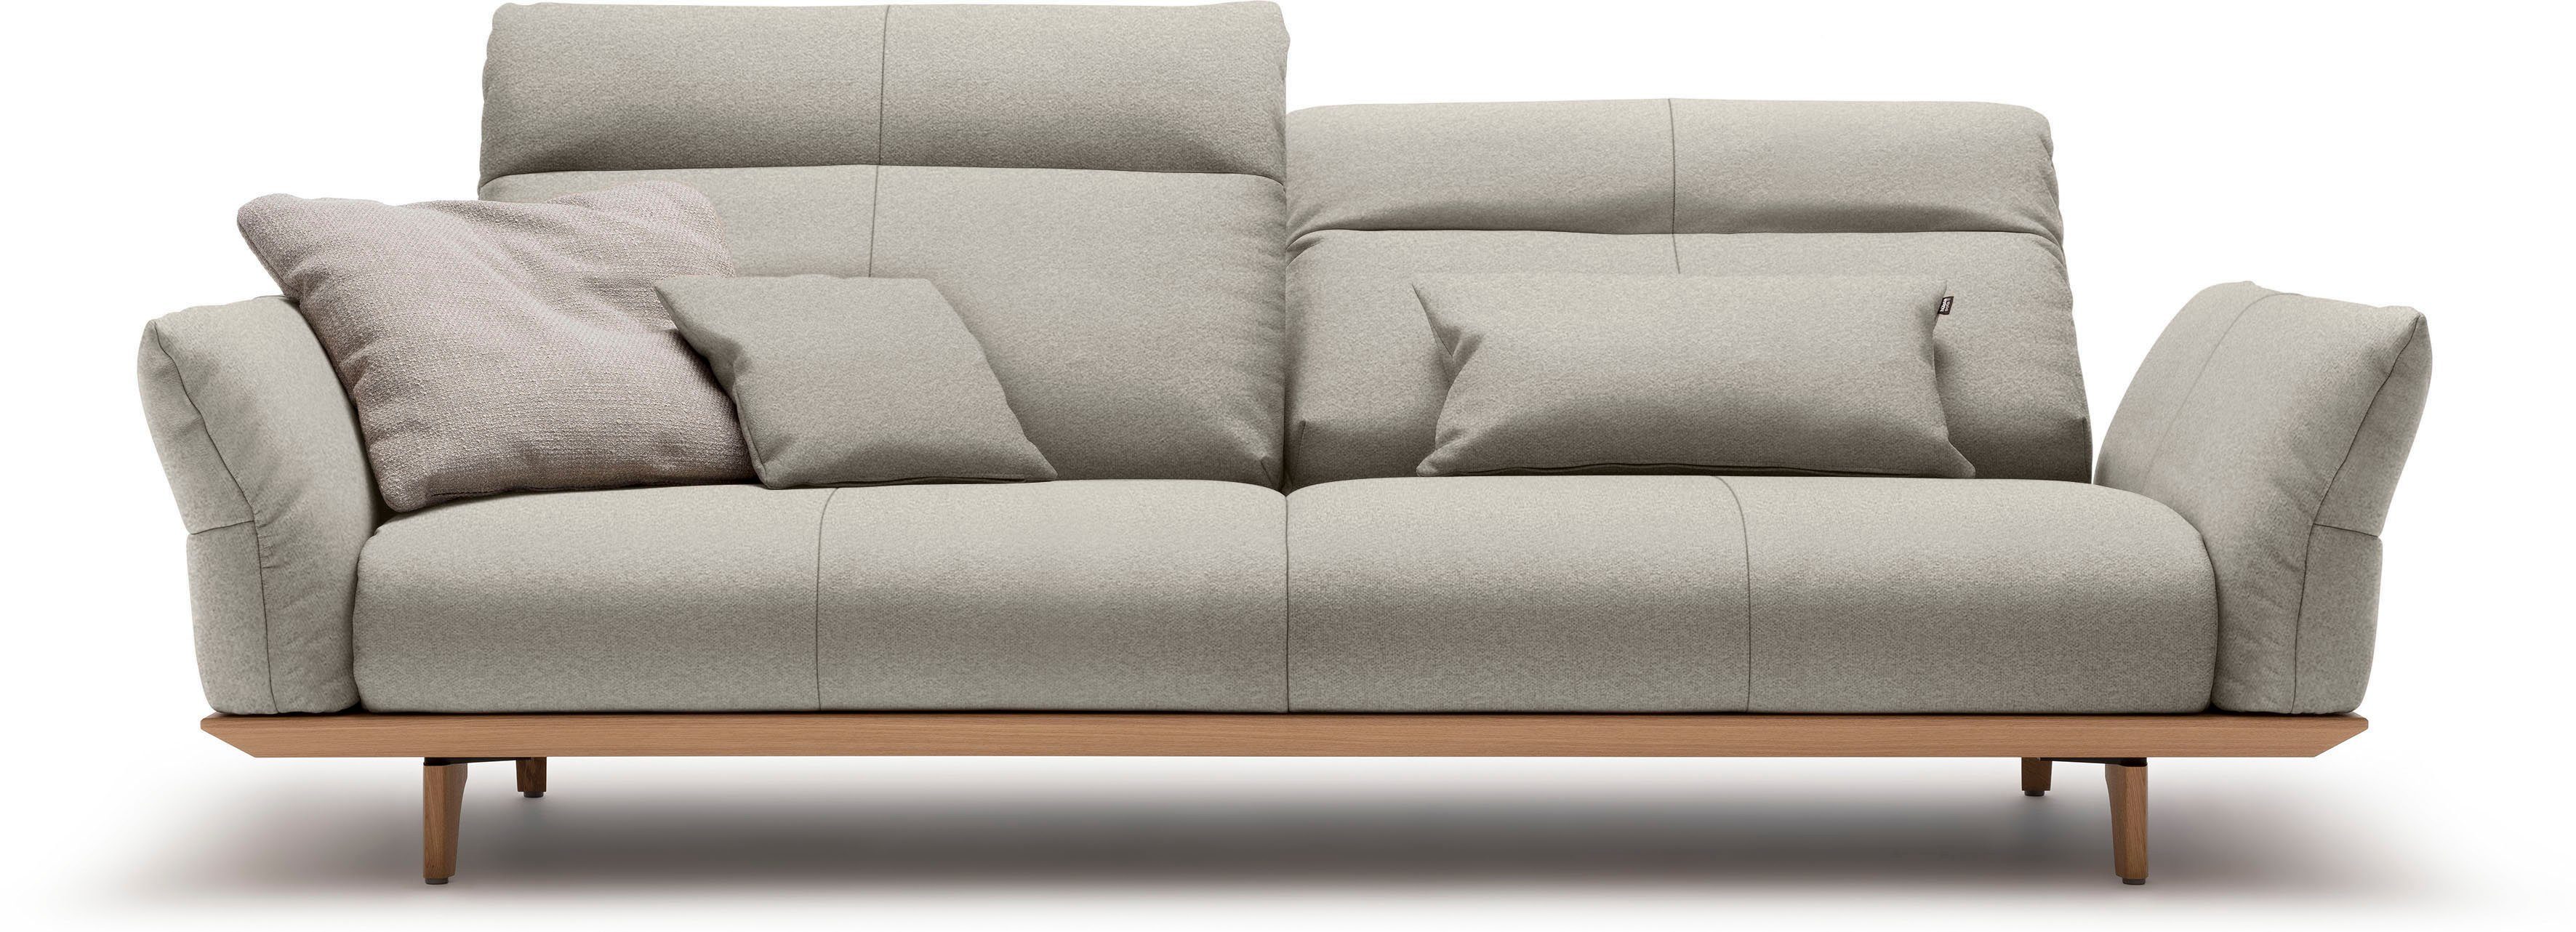 huelsta sofa 3,5-zitsbank hs.460 onderstel in eiken, poten in natuurlijk eiken, breedte 228 cm grijs